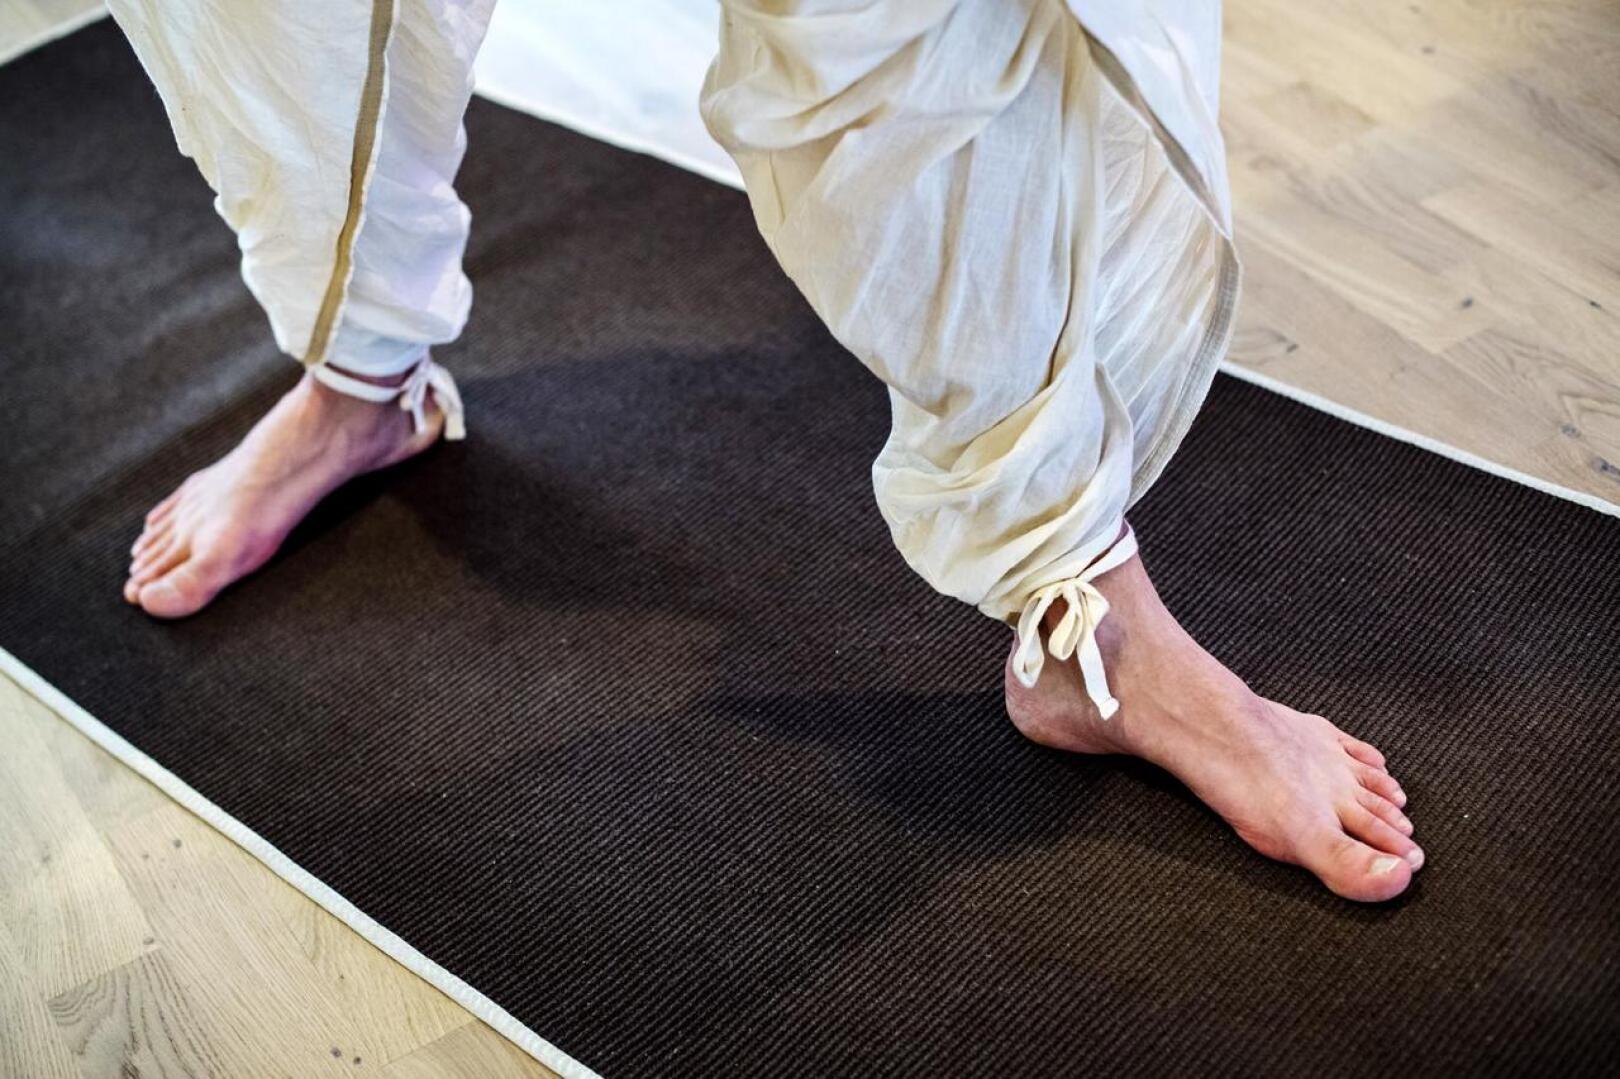 Useat joogaharjoitukset tehdään ilman sukkia. Tyypillisesti alla on matto.